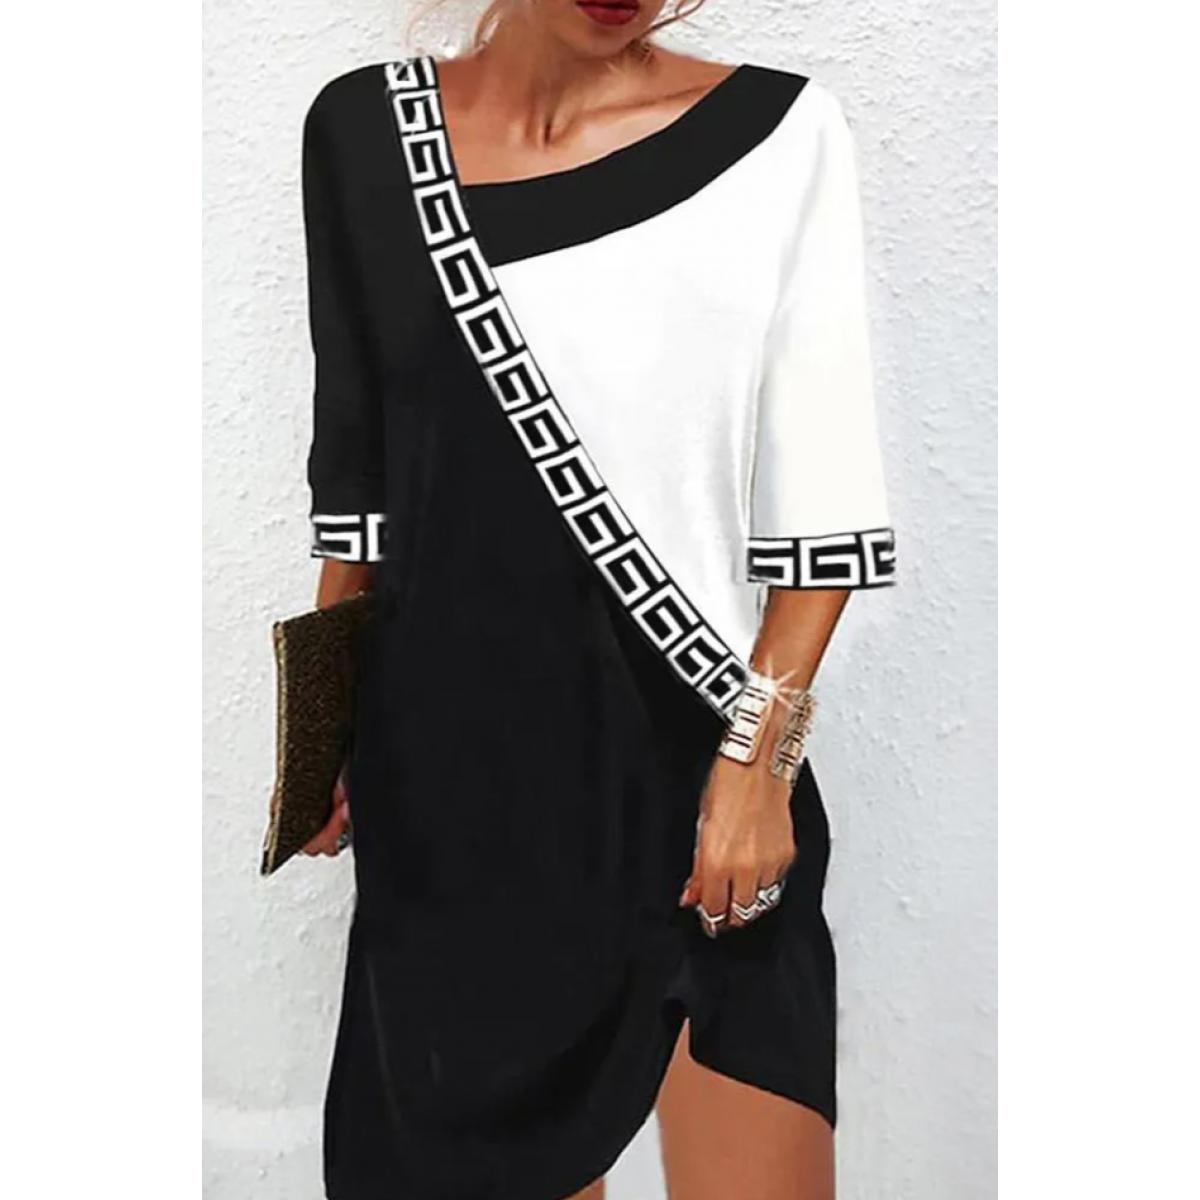 Elegantes Kleid Mit Geometrischem Druck, Schwarz Und Weiß